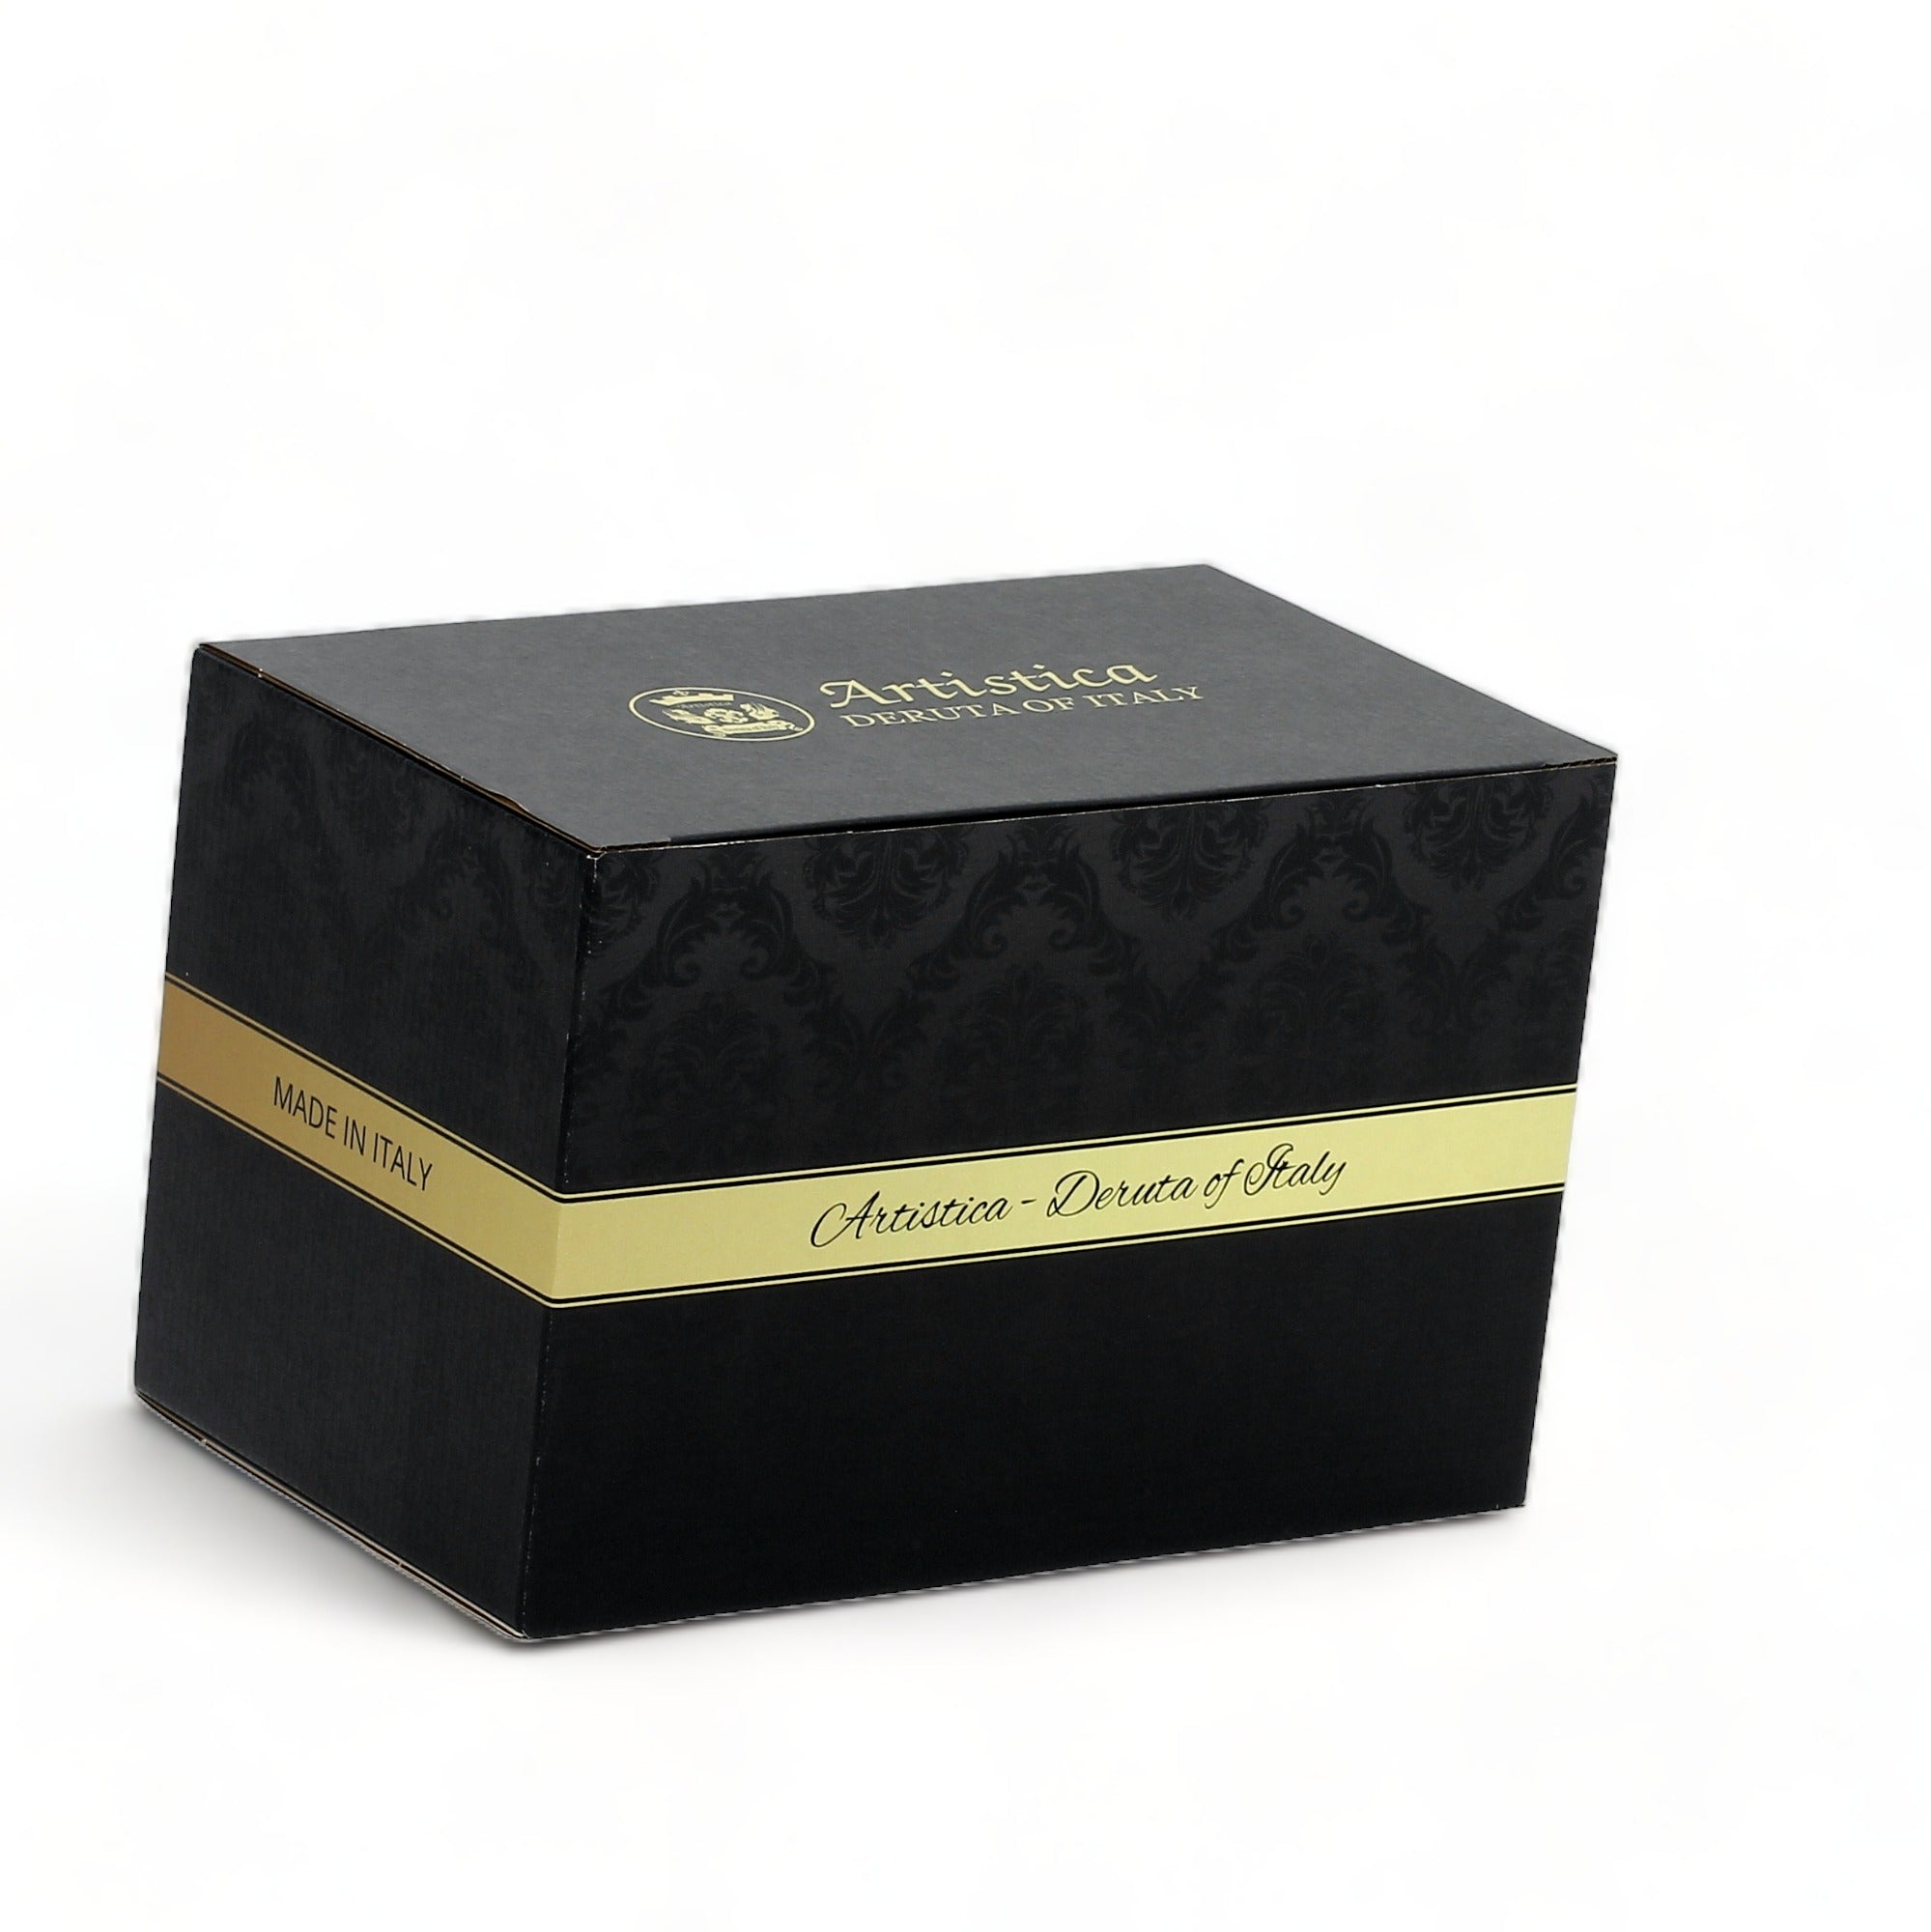 GIFT BOX: With authentic Deruta hand painted ceramic - Liquid Soap/Lotion Dispenser Foglie Design